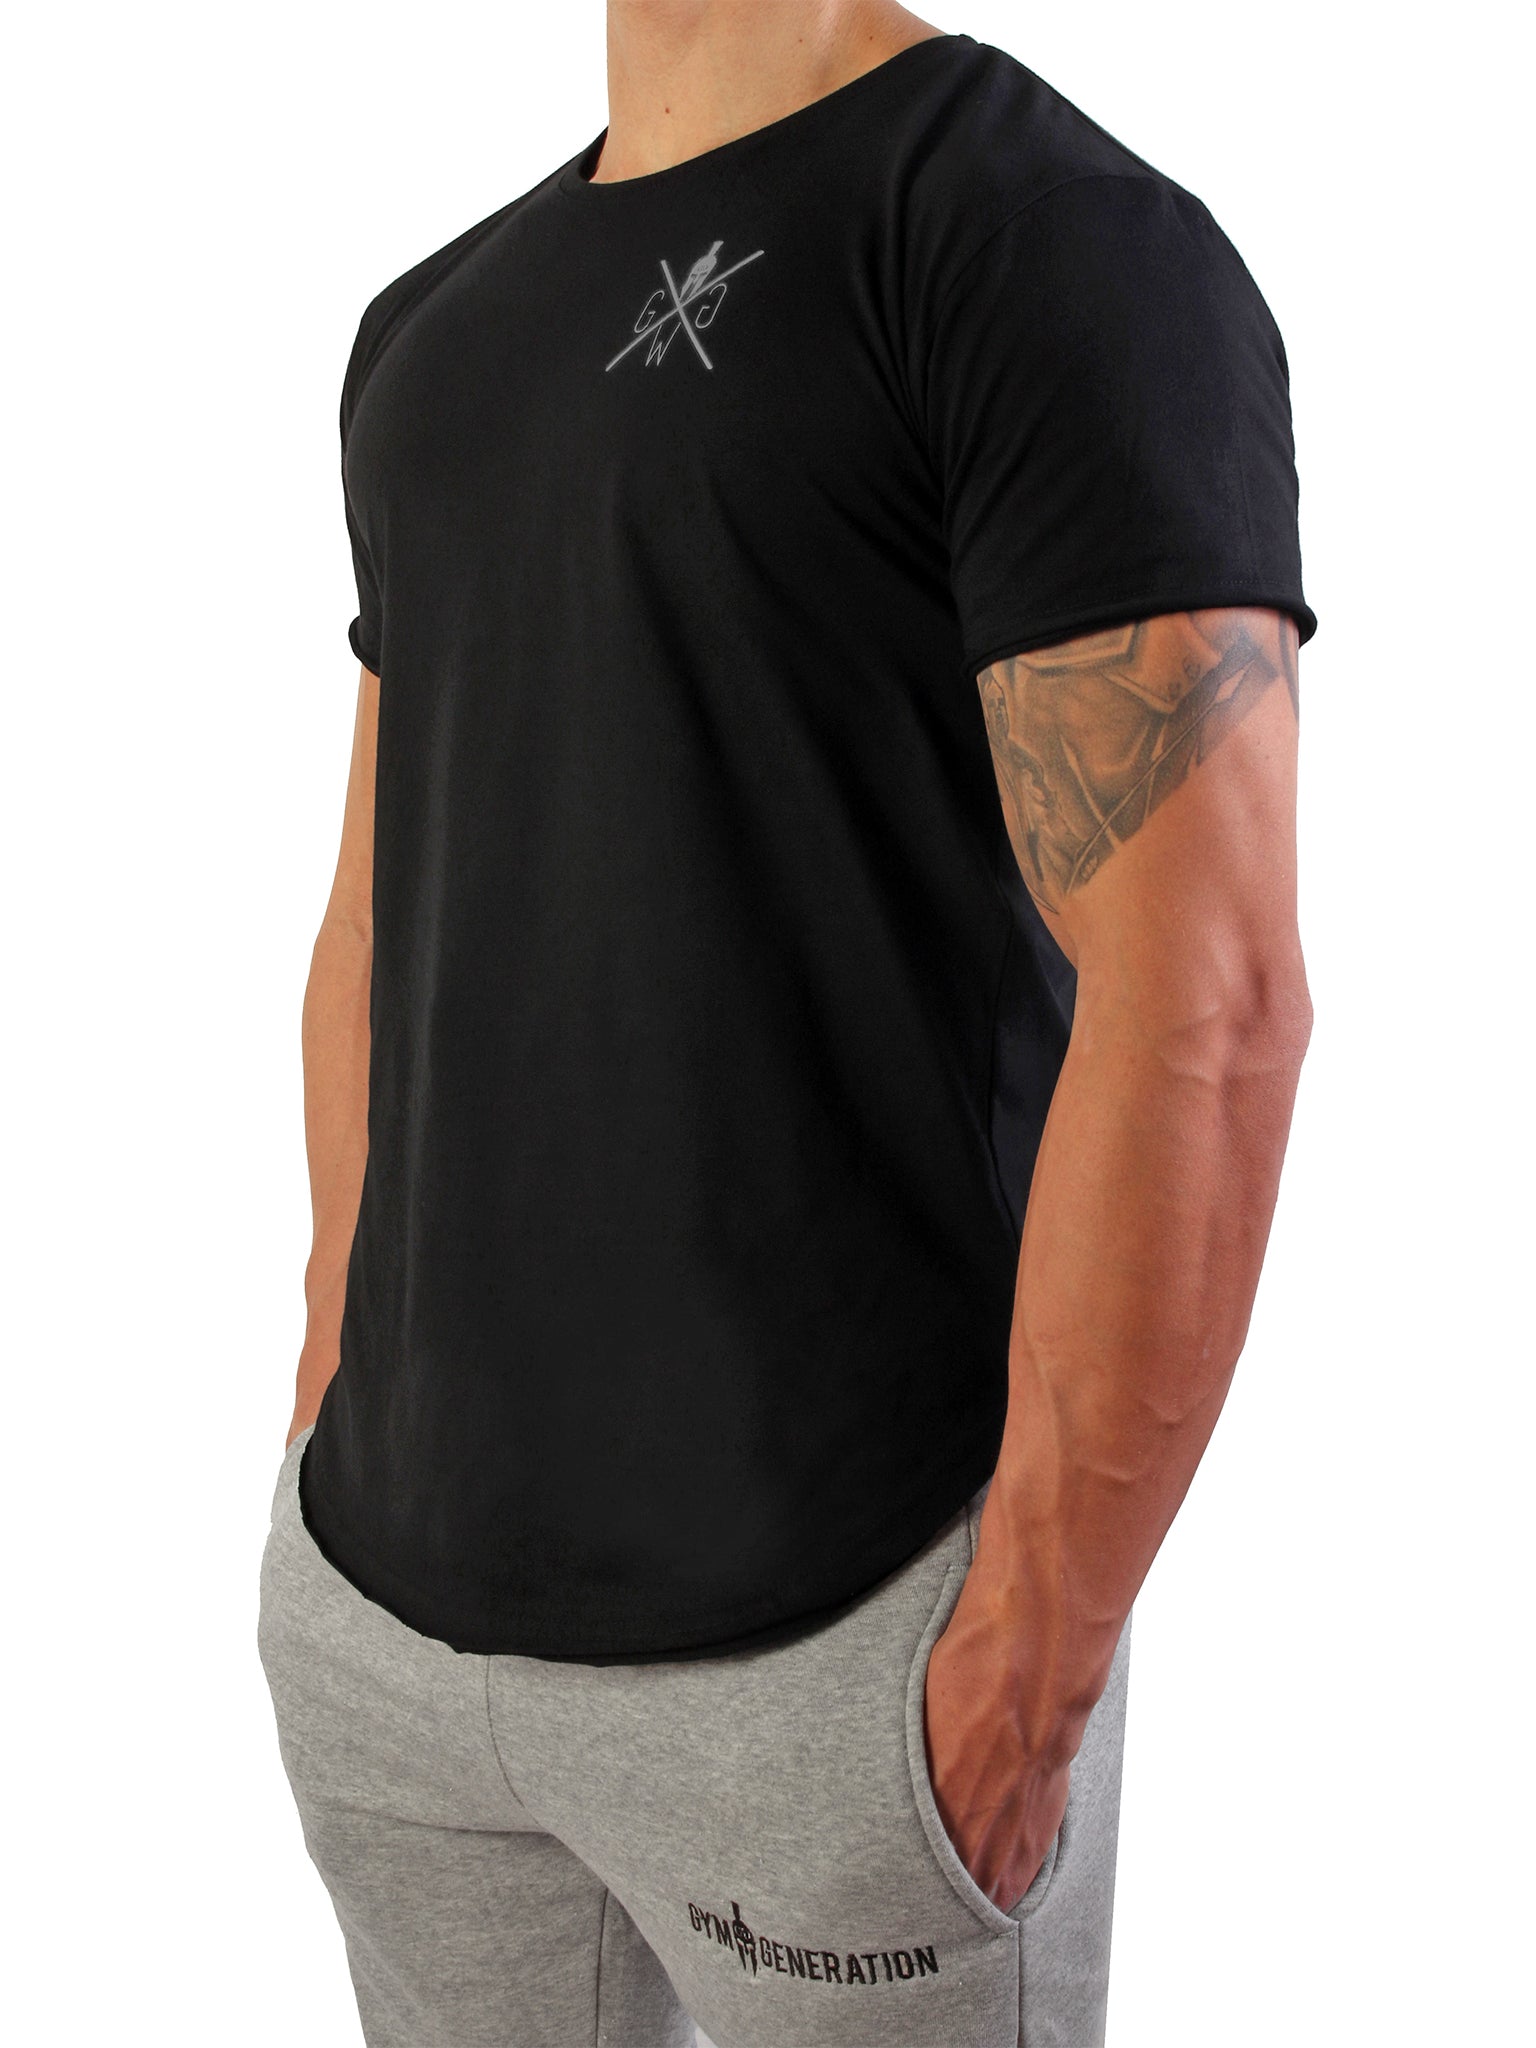 Schwarzes Spartan T-Shirt von Gym Generation mit markantem dunkelgrauem Print und griechischem Ornament-Kreis.